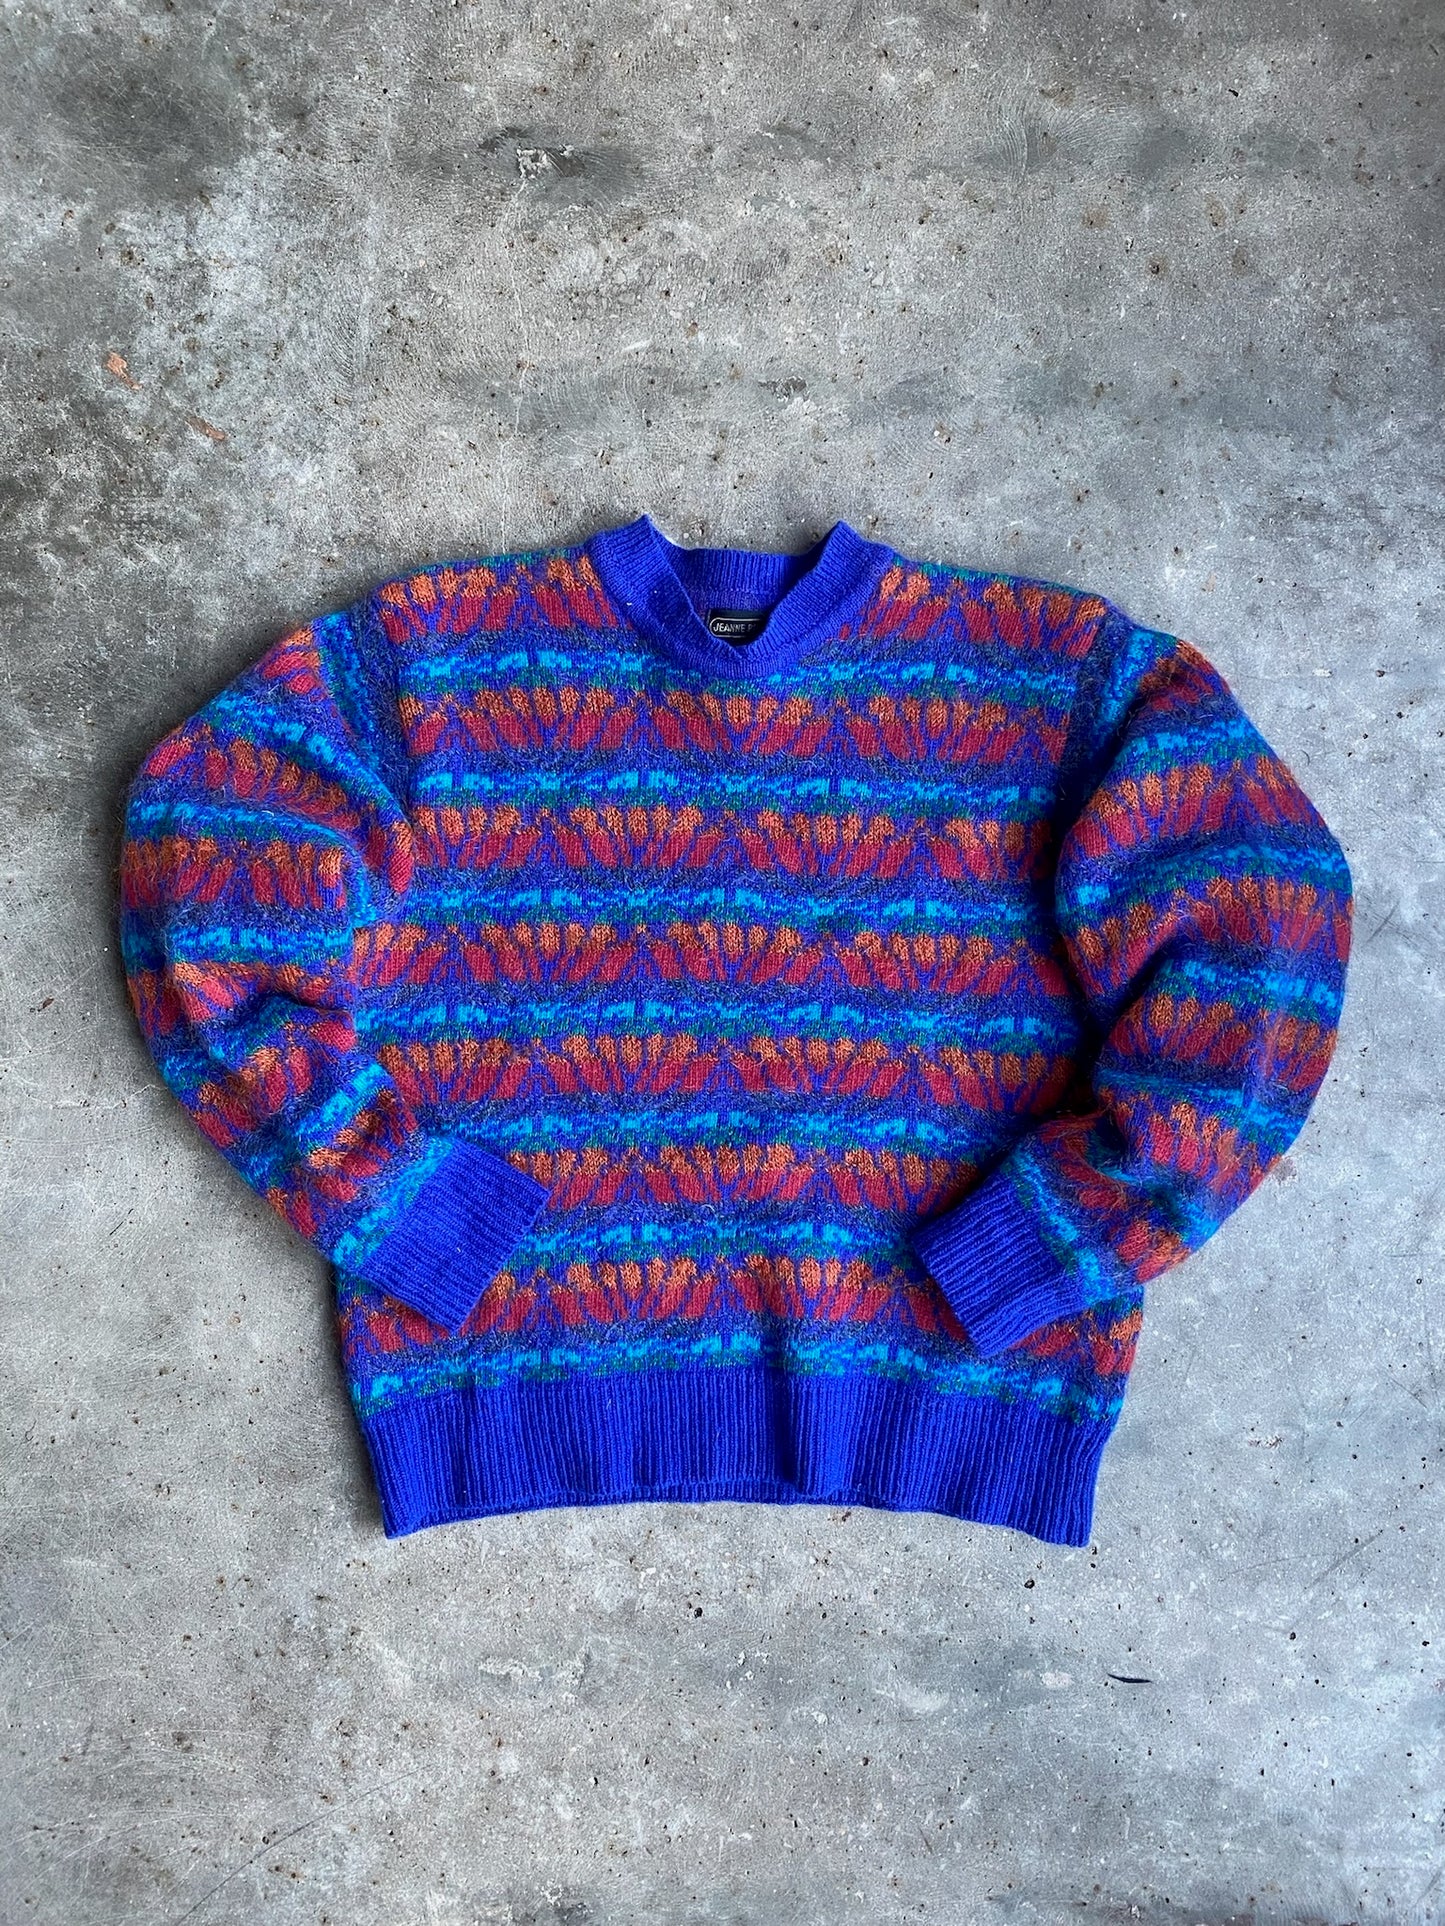 Vintage Jeanne Pierre Sweater - M